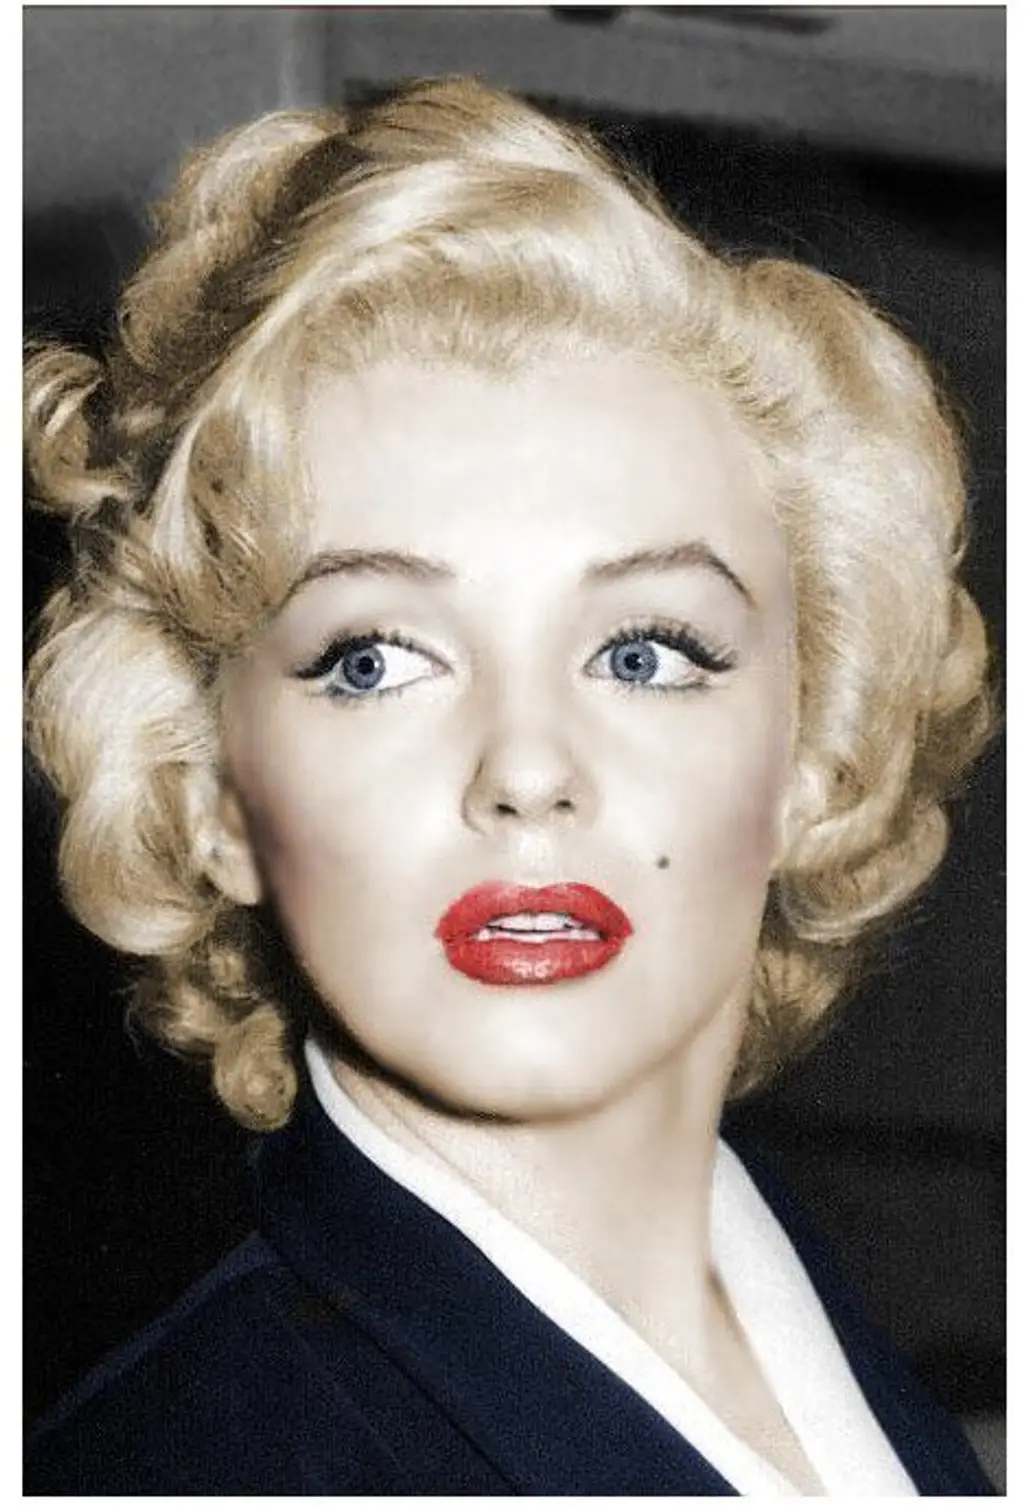 Mimic Marilyn Monroe’s Mole